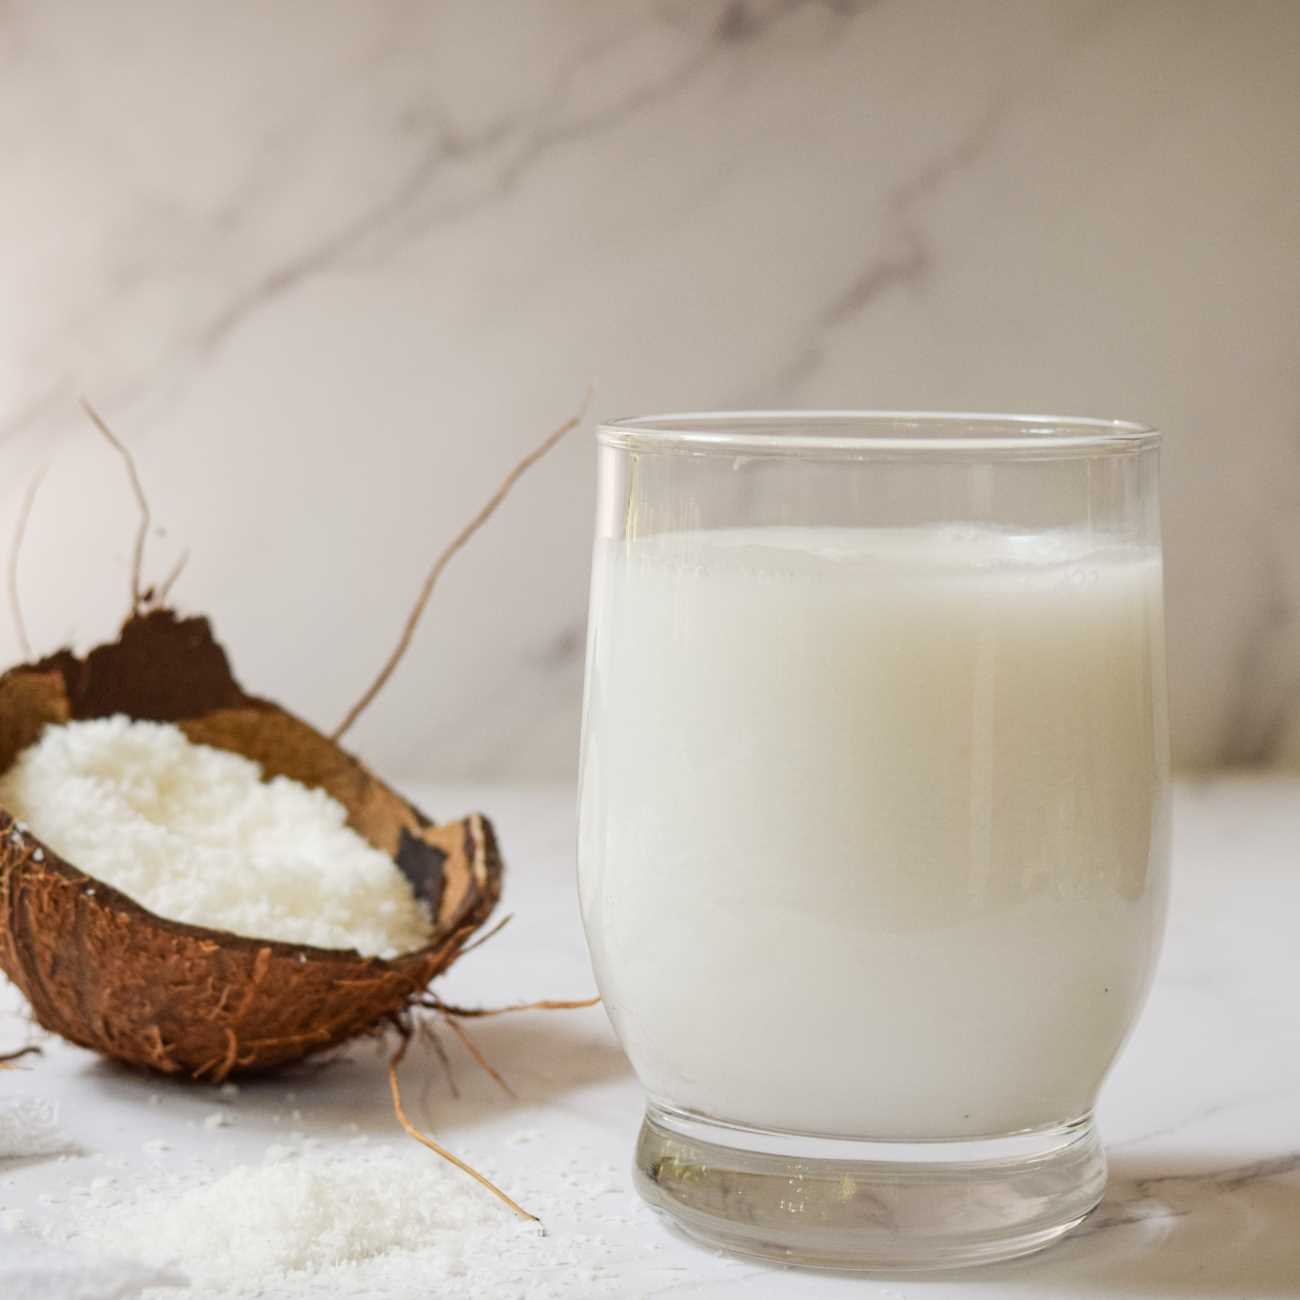 Mleko kokosowe jest pokazane z wiórkami kokosowymi i łupinami orzecha kokosowego.